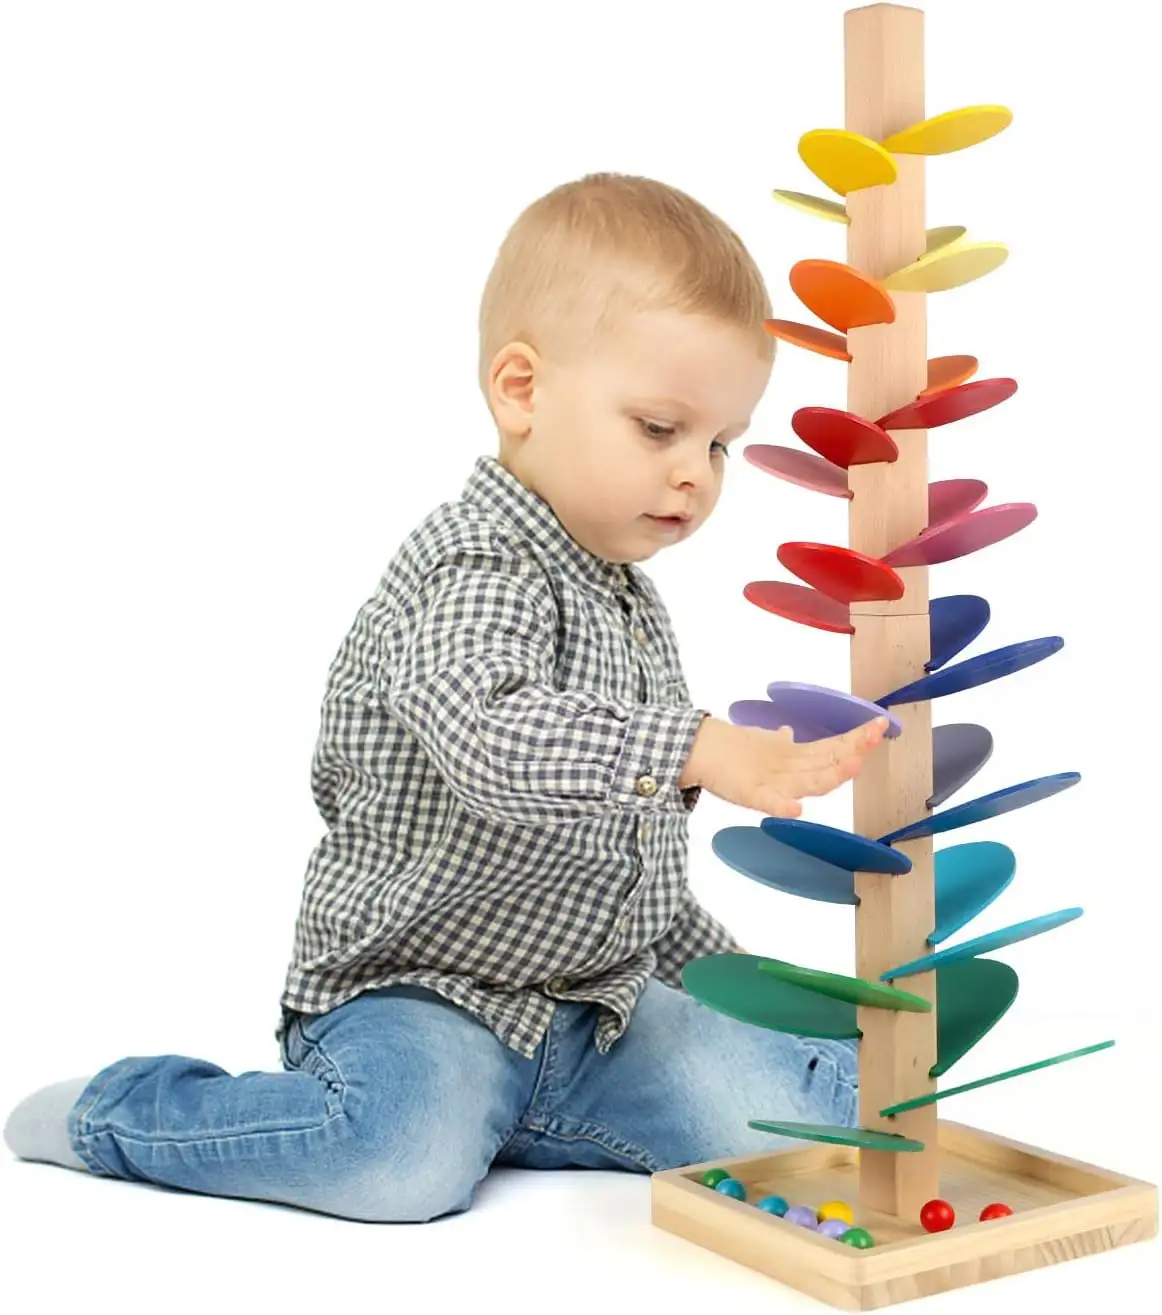 Albero di legno giocattolo per i più piccoli, palla corsa pista di gioco per i bambini, musica albero educativo Montessori giocattolo ragazzo ragazza regali